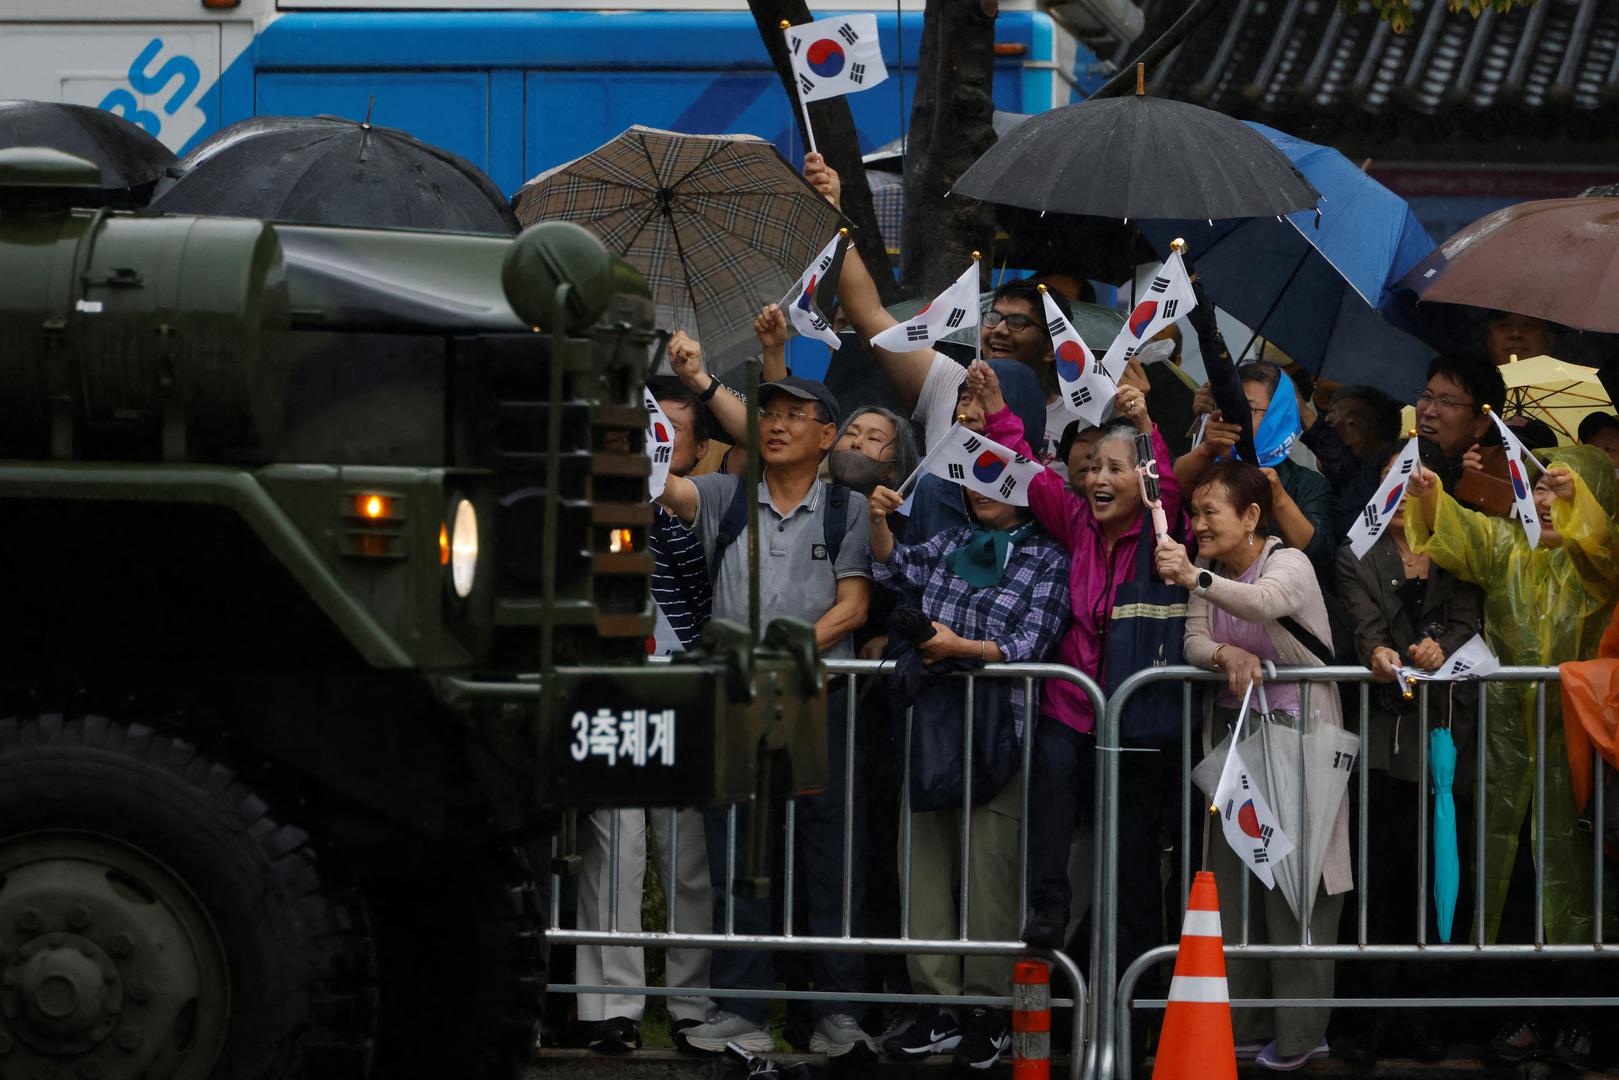 Parada je organizirana u sklopu obilježavanja južnokorejskog Dana oružanih snaga, inače prigušenog događaja u odnosu na masovne događaje koje je Sjever organizirao pod vođom Kim Jong Unom, a koji uključuju strateško oružje poput interkontinentalnih balističkih projektila (ICBM).